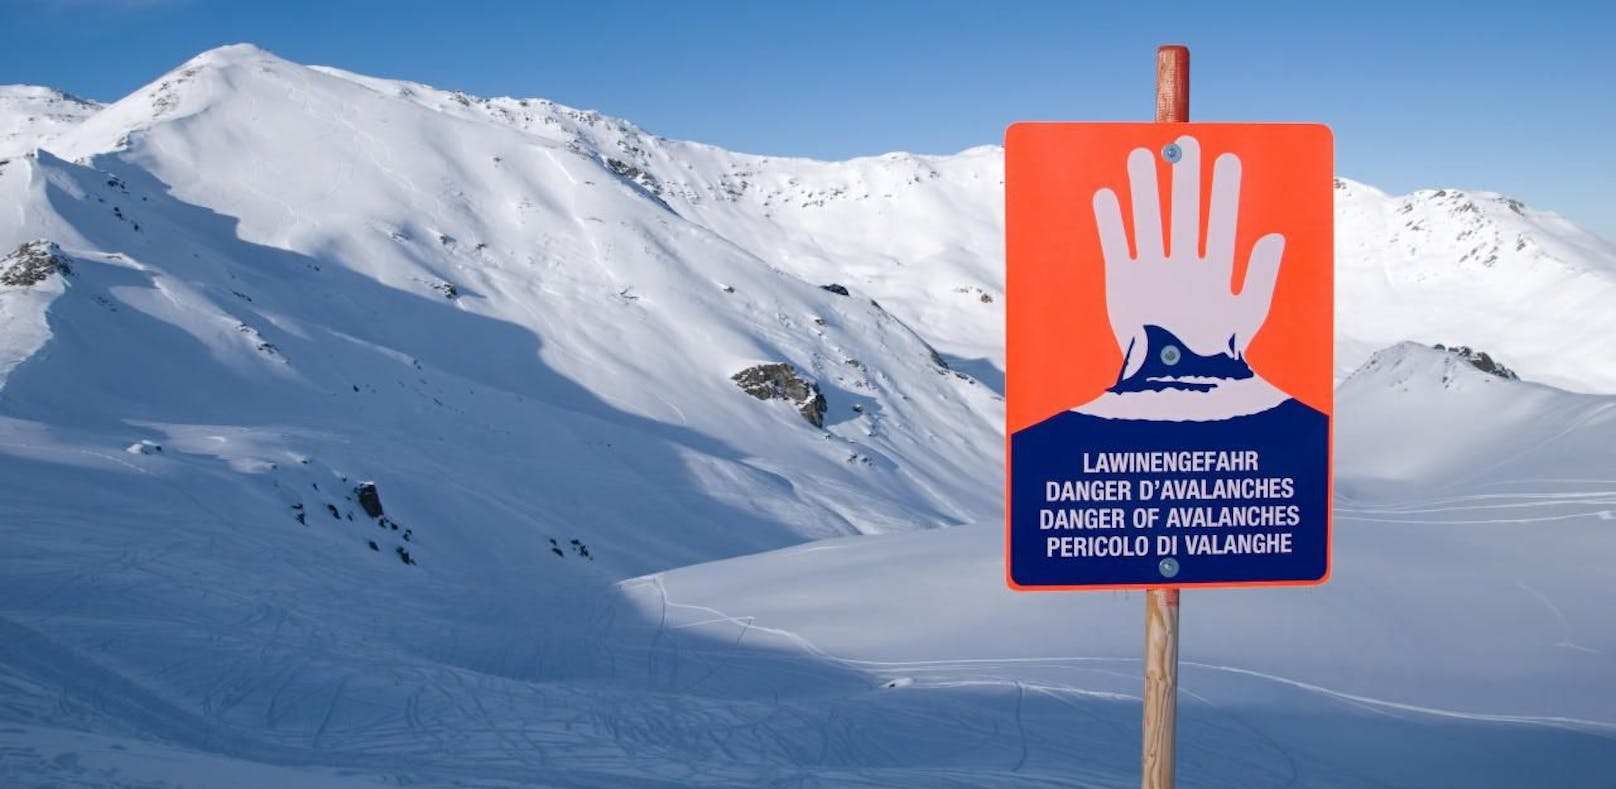 Bei dem Lawinenunglück starben drei erfahrene Alpinisten.